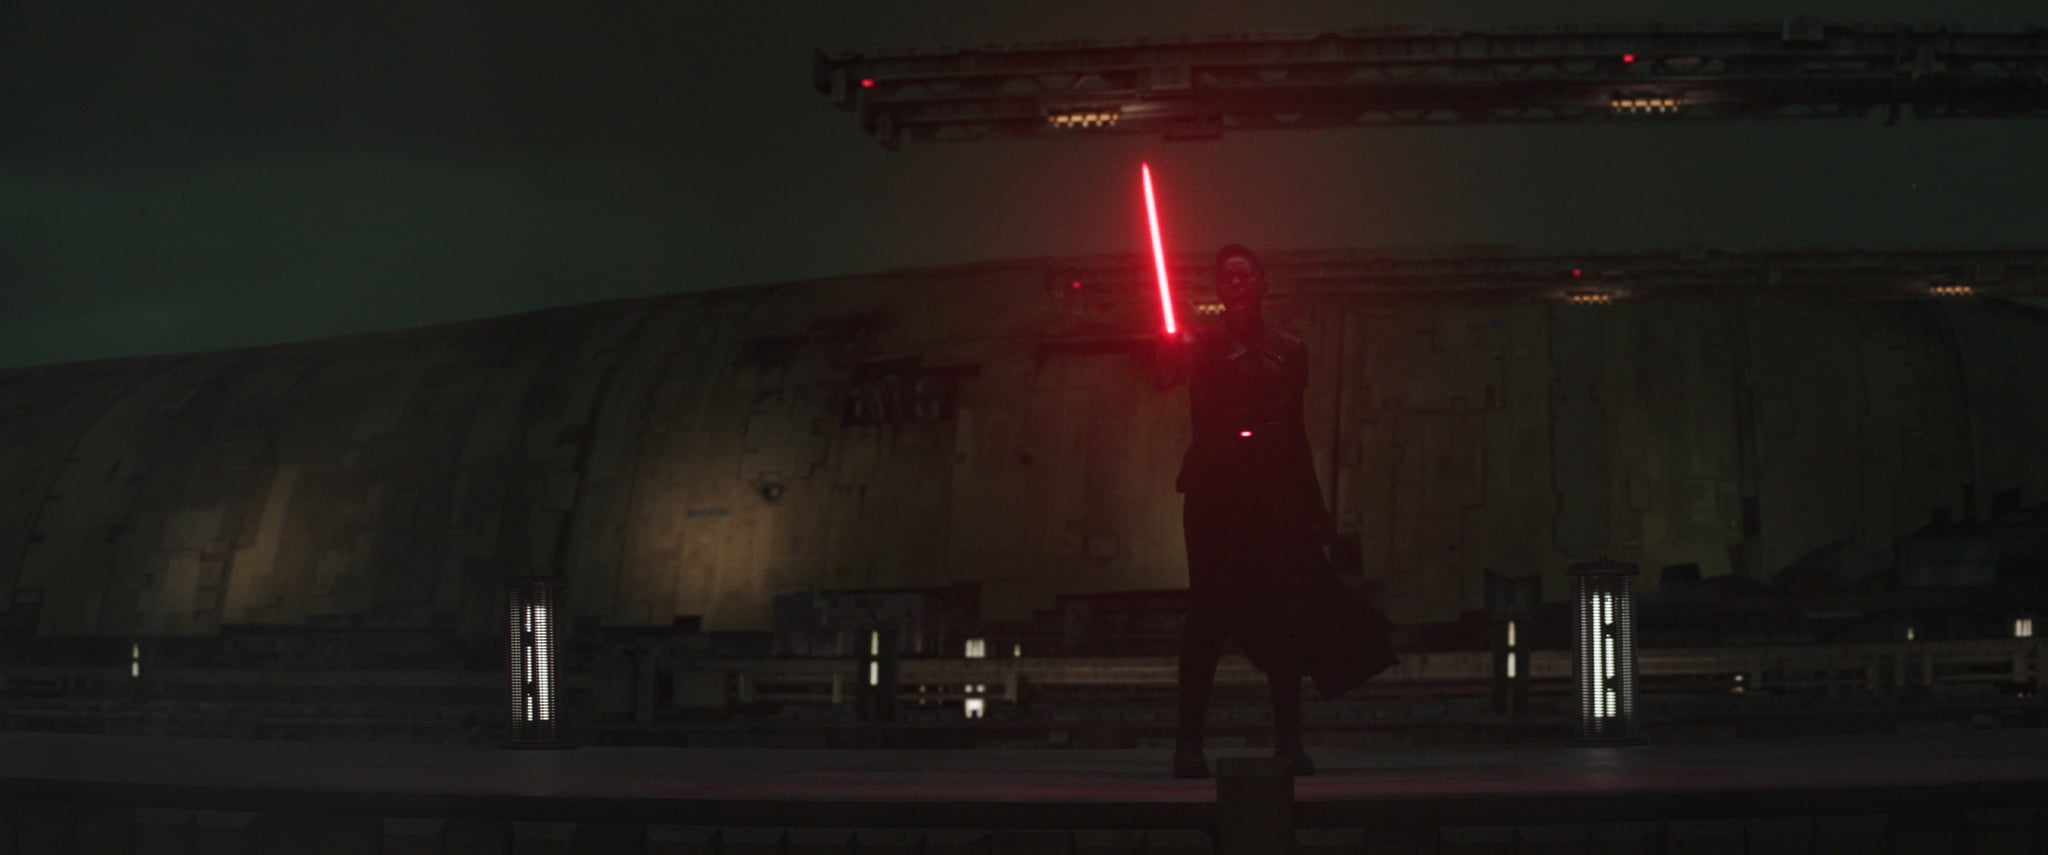 Moses Ingram as Reva using a red lightsaber in Obi-Wan Kenobi